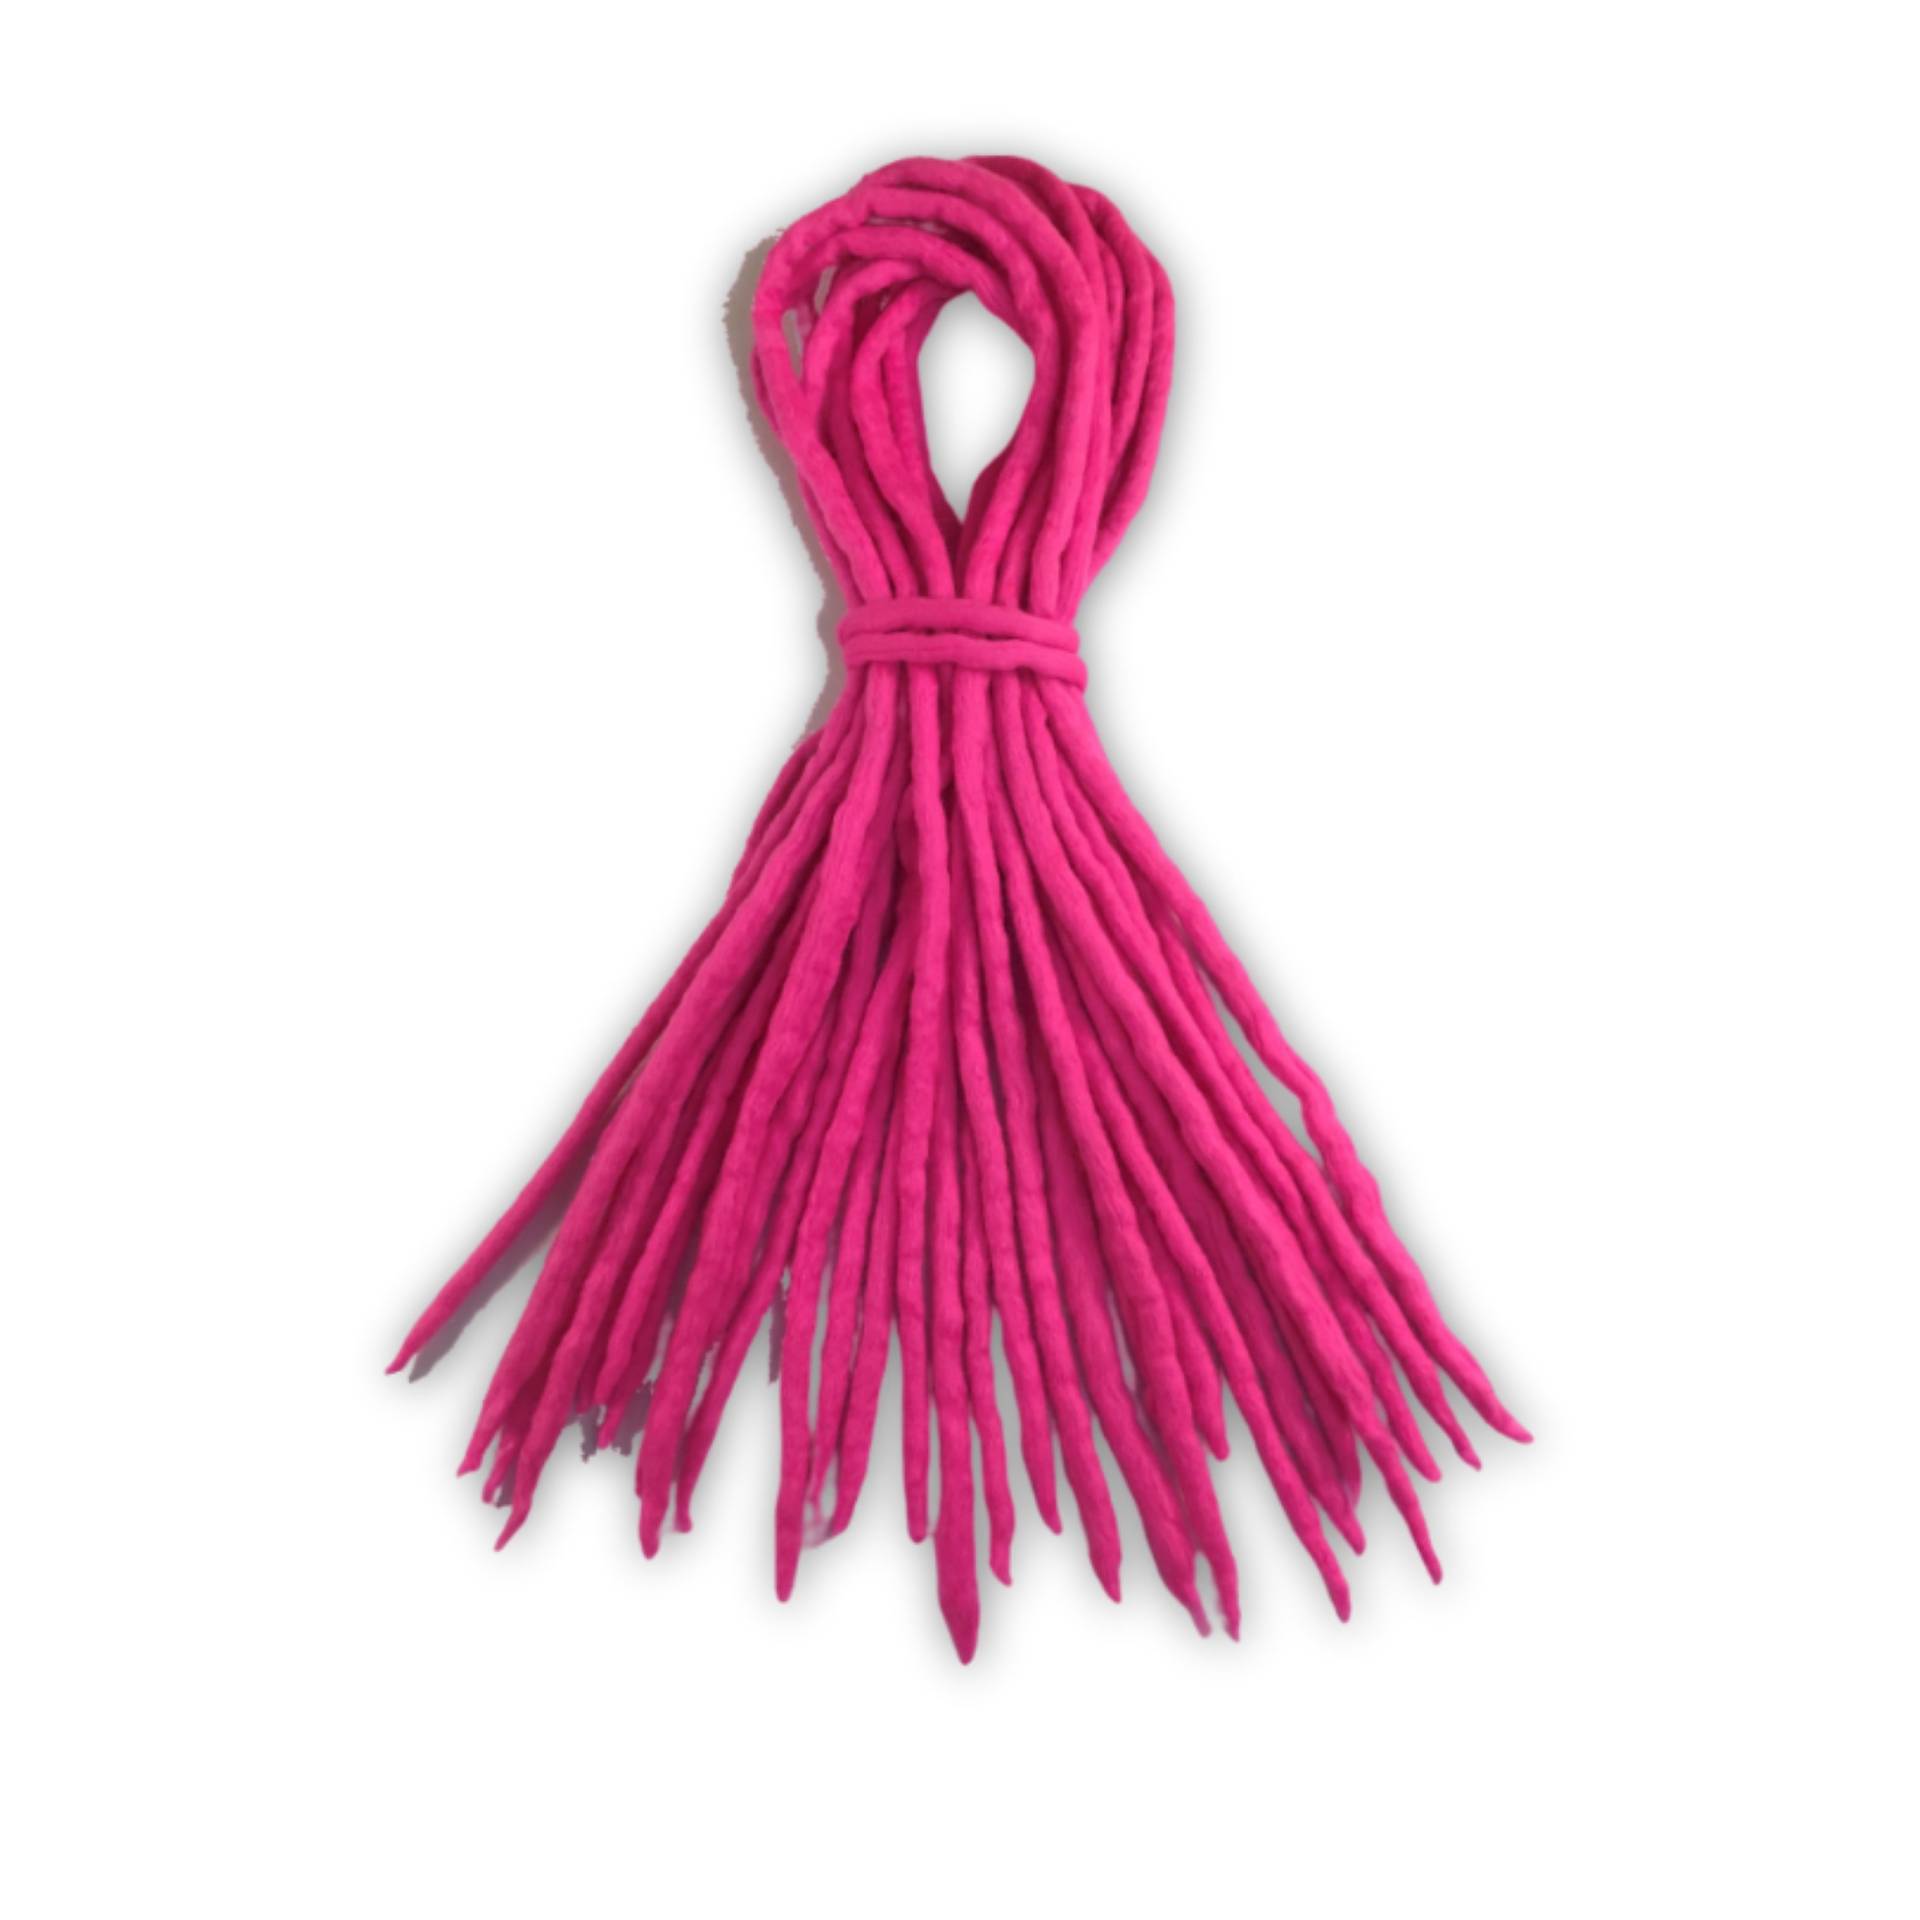 Rosa Dreadlocks - Handgemachte Double Ended De Merino Wolle Dreads Pink Dread Dreadlock Erweiterungen von pixielocks